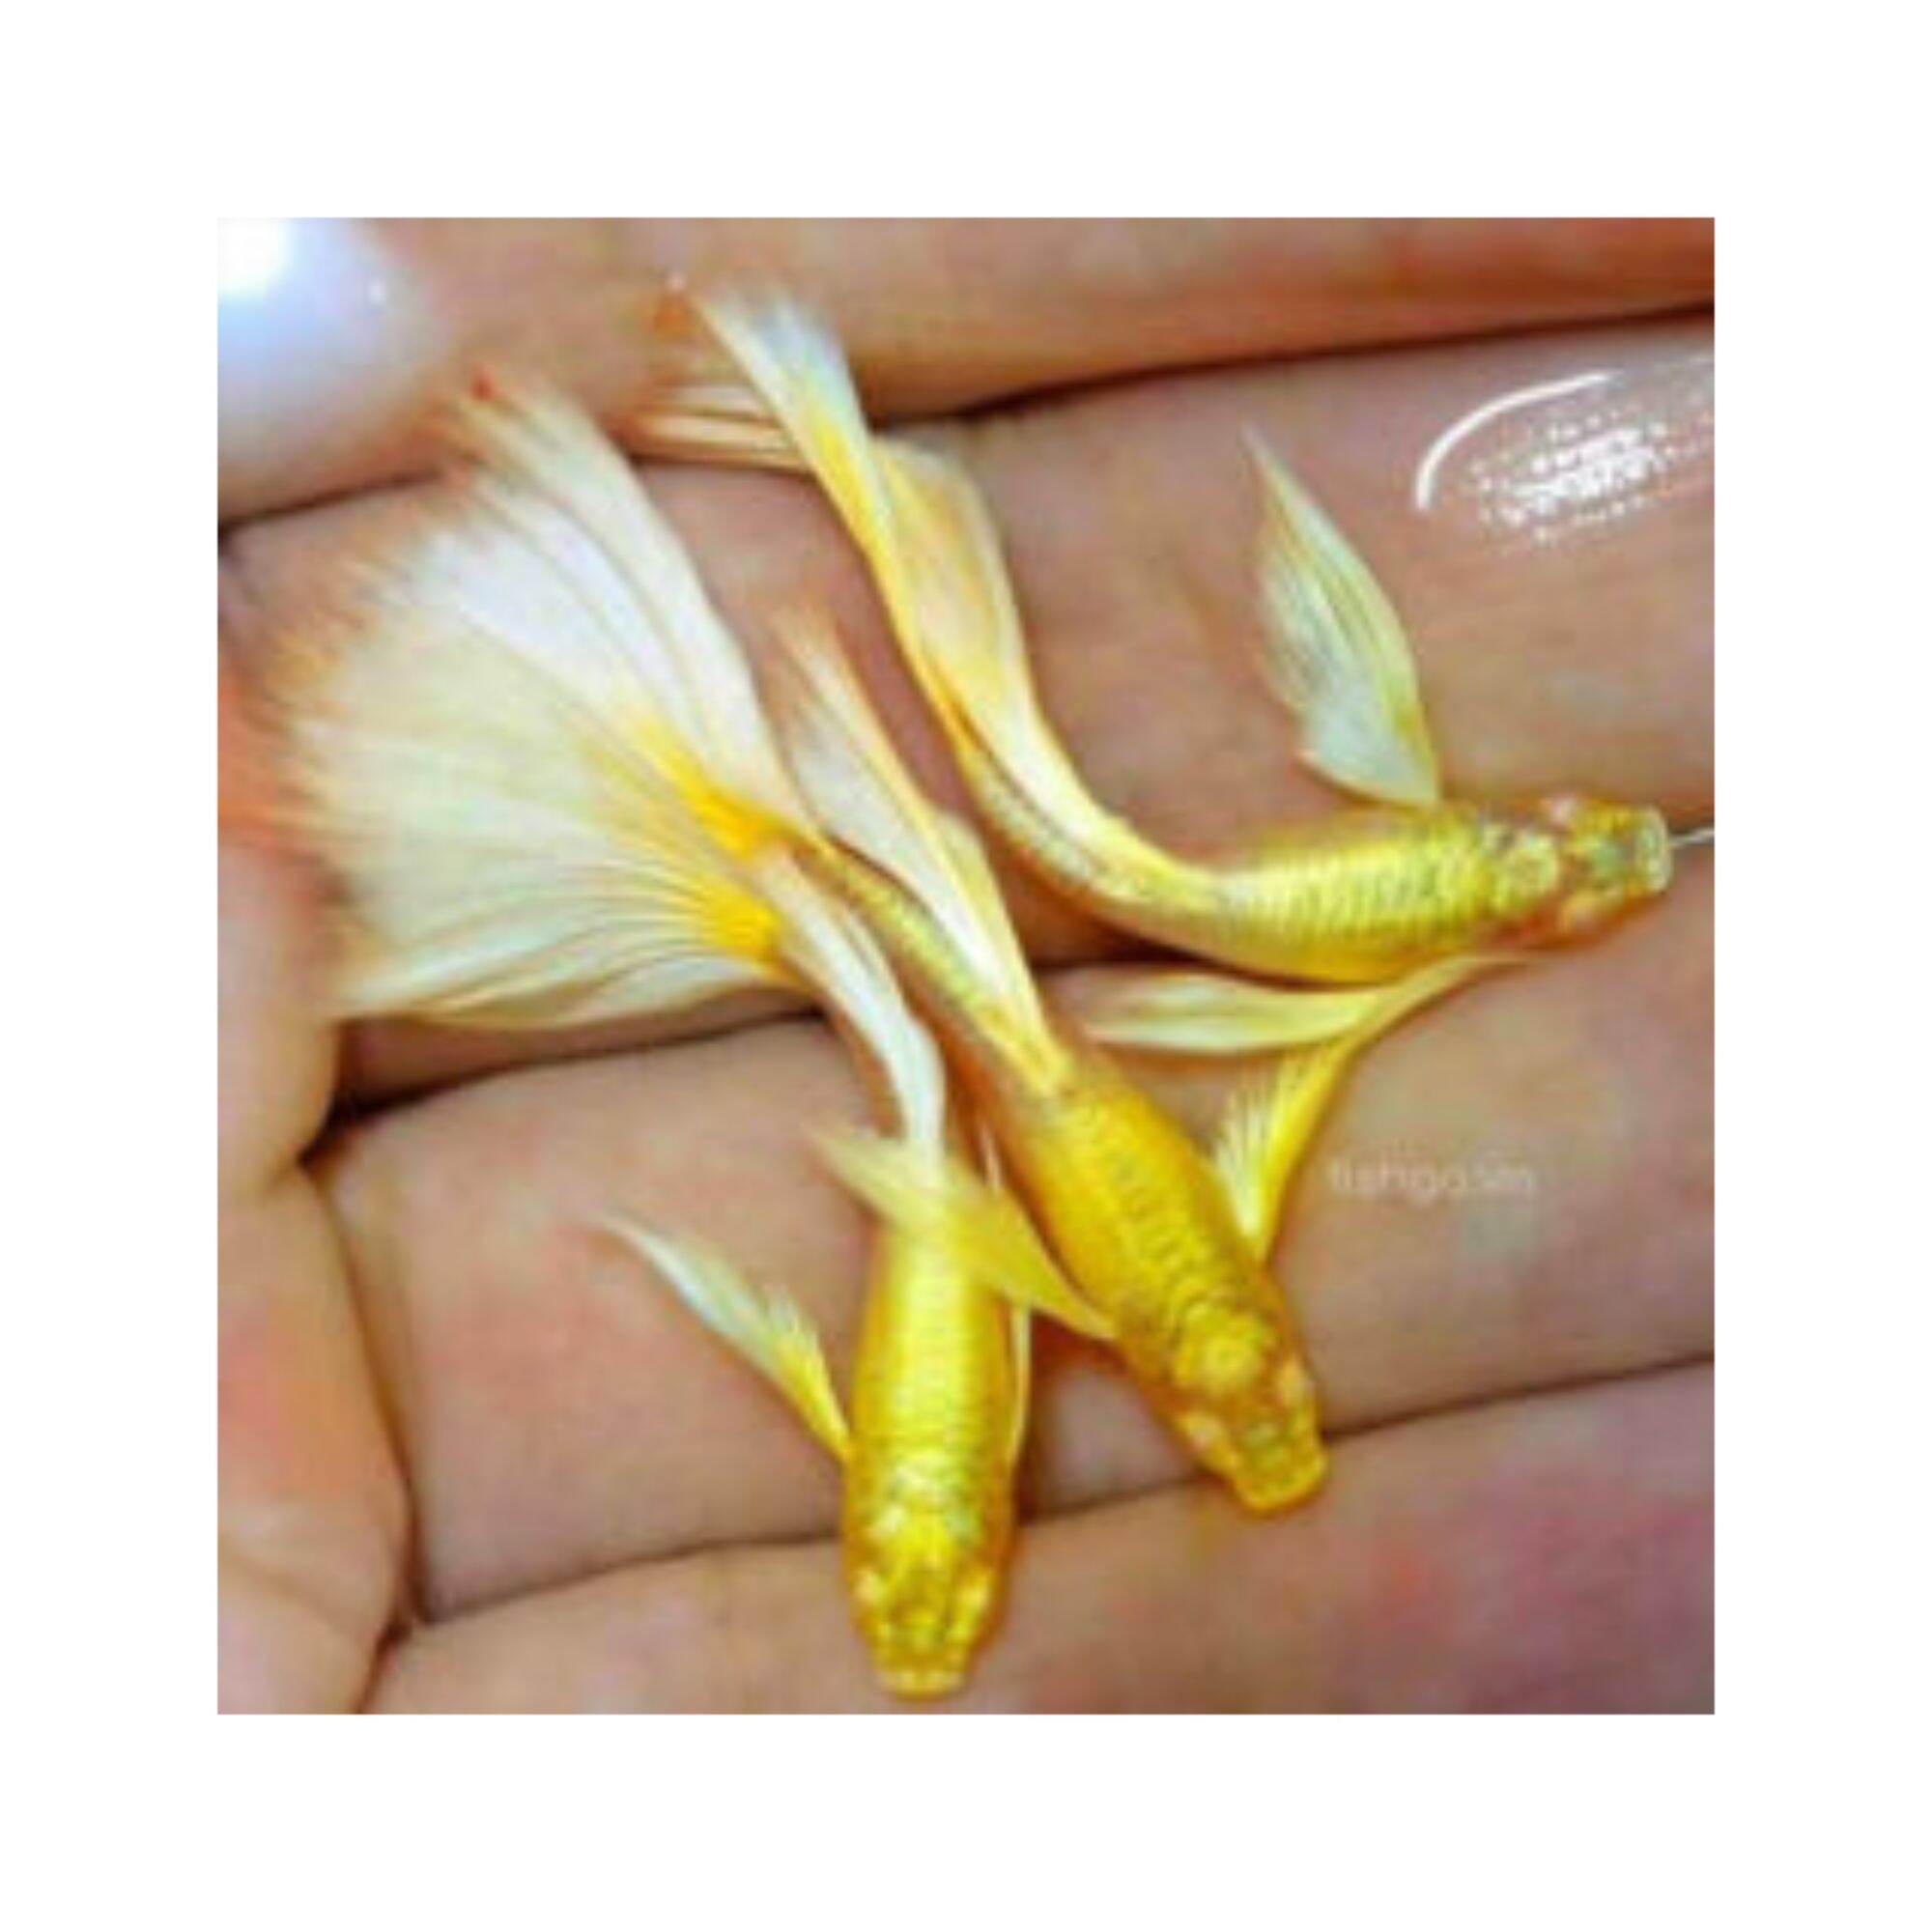 Cá 7 màu Full gold gen ribon tay bơi bướm phụ kiện trang trí hồ cá cảnh thumbnail